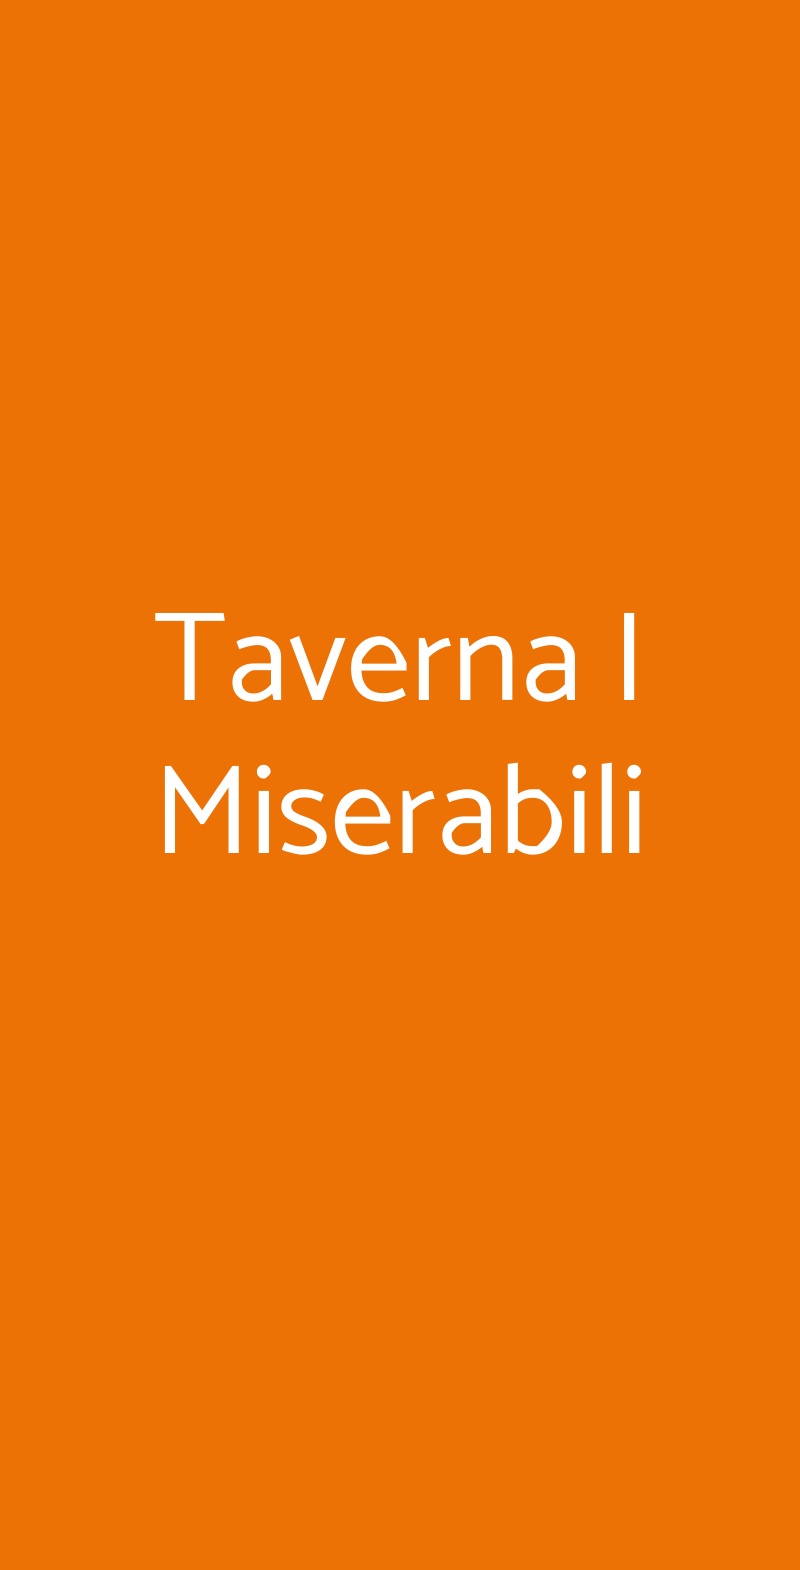 Taverna I Miserabili Torino menù 1 pagina